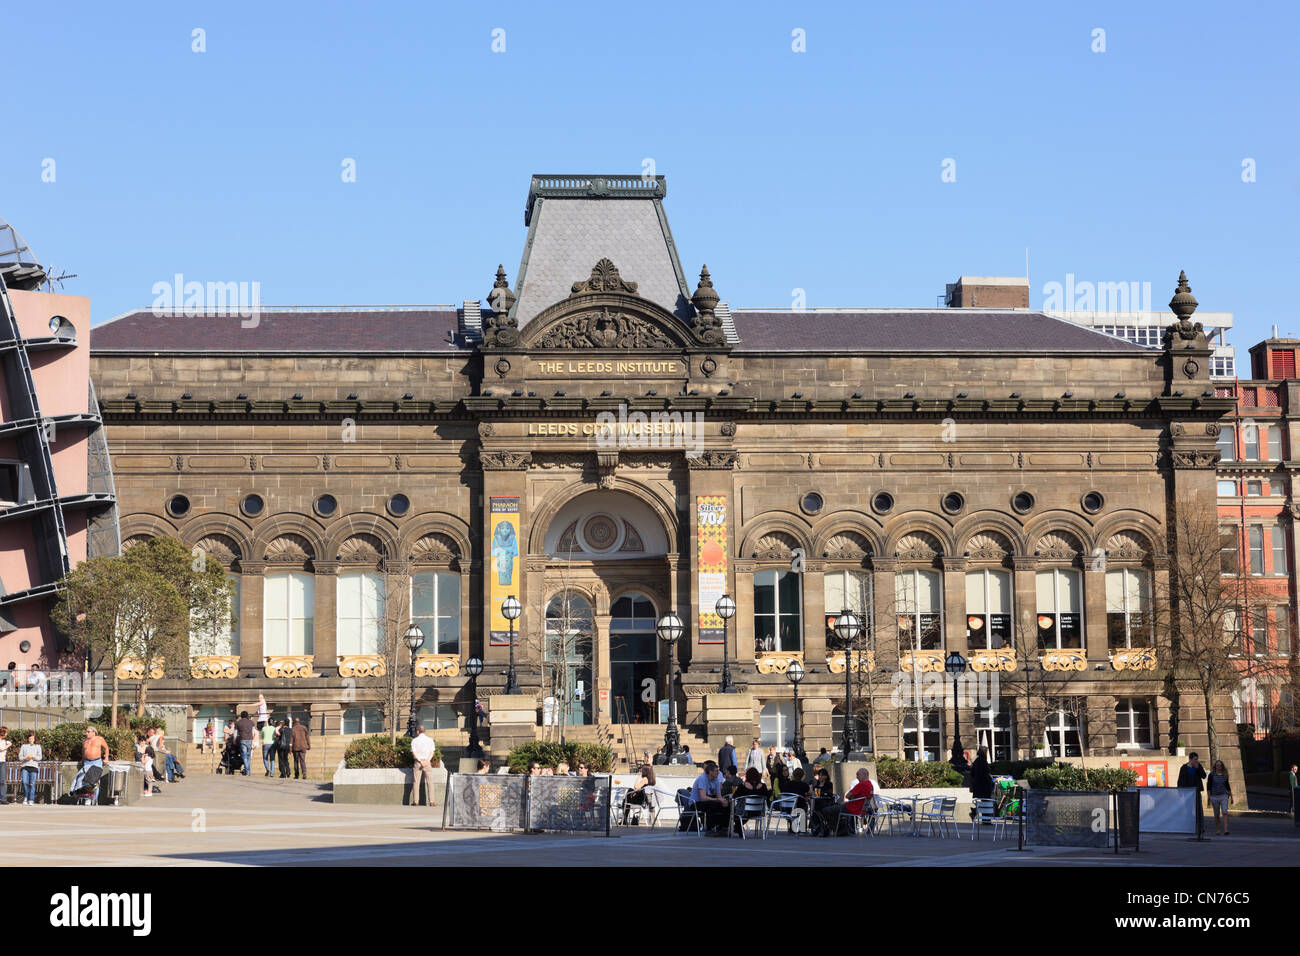 Leeds City Museum im historischen Civic Institut Gebäude 1862 mit Personen außerhalb. Millennium Square Leeds Yorkshire England Großbritannien Stockfoto